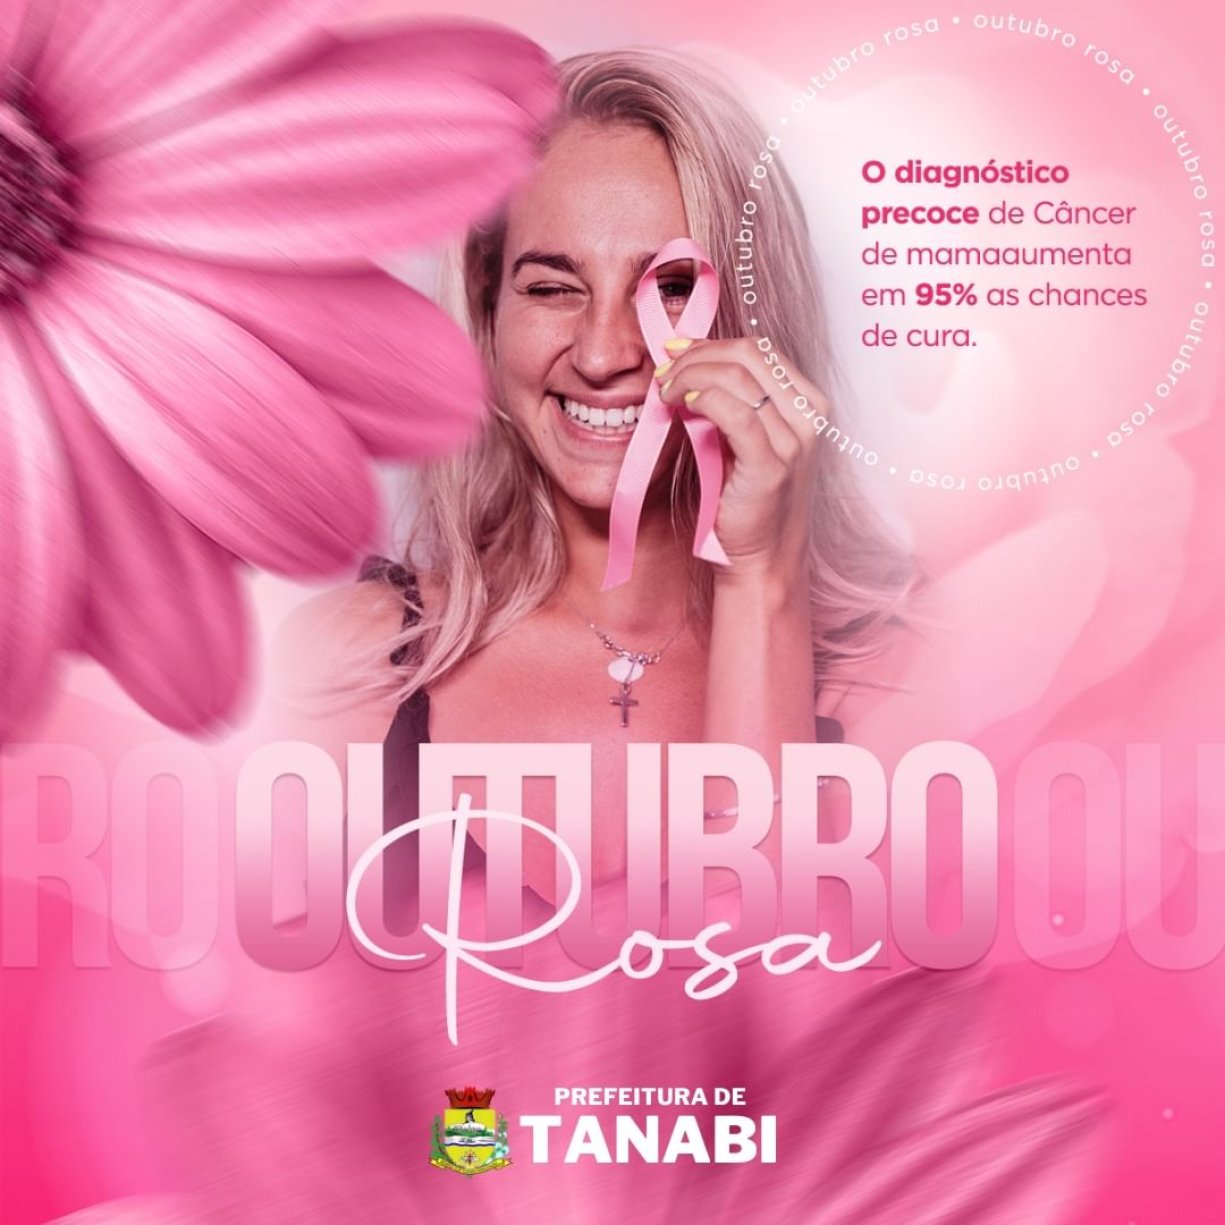 Neste Outubro Rosa, a Prefeitura de Tanabi destaca a importância da prevenção do câncer de mama.